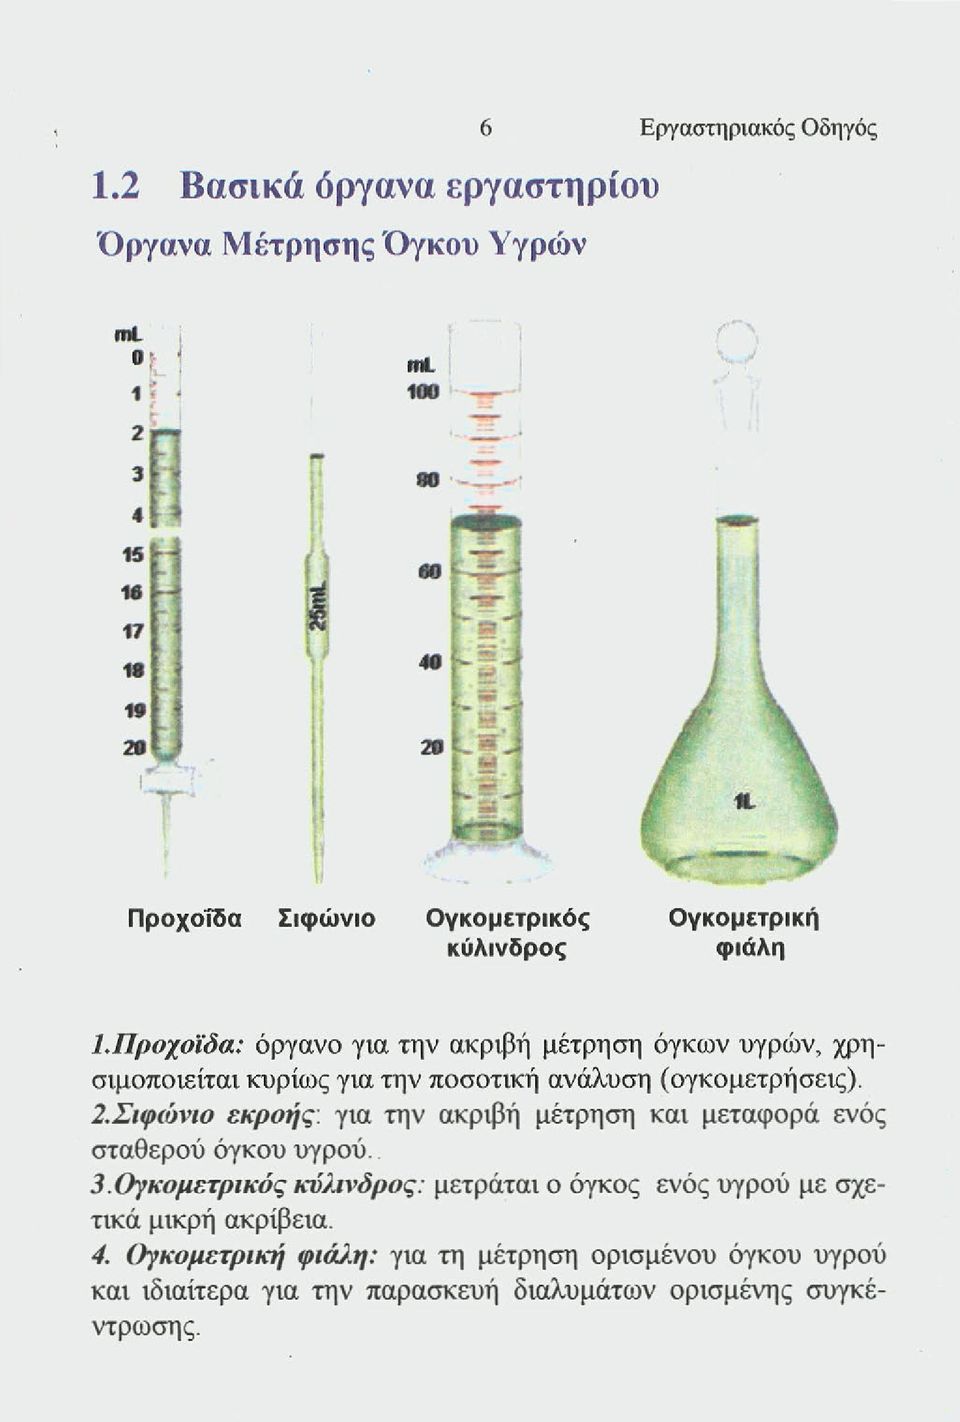 Προχοϊδα: όργανο για την ακριβή μέτρηση όγκων υγρών, χρησιμοποιείται κυρίως για την ποσοτική ανάλυση (ογκομετρήσεις). 2.